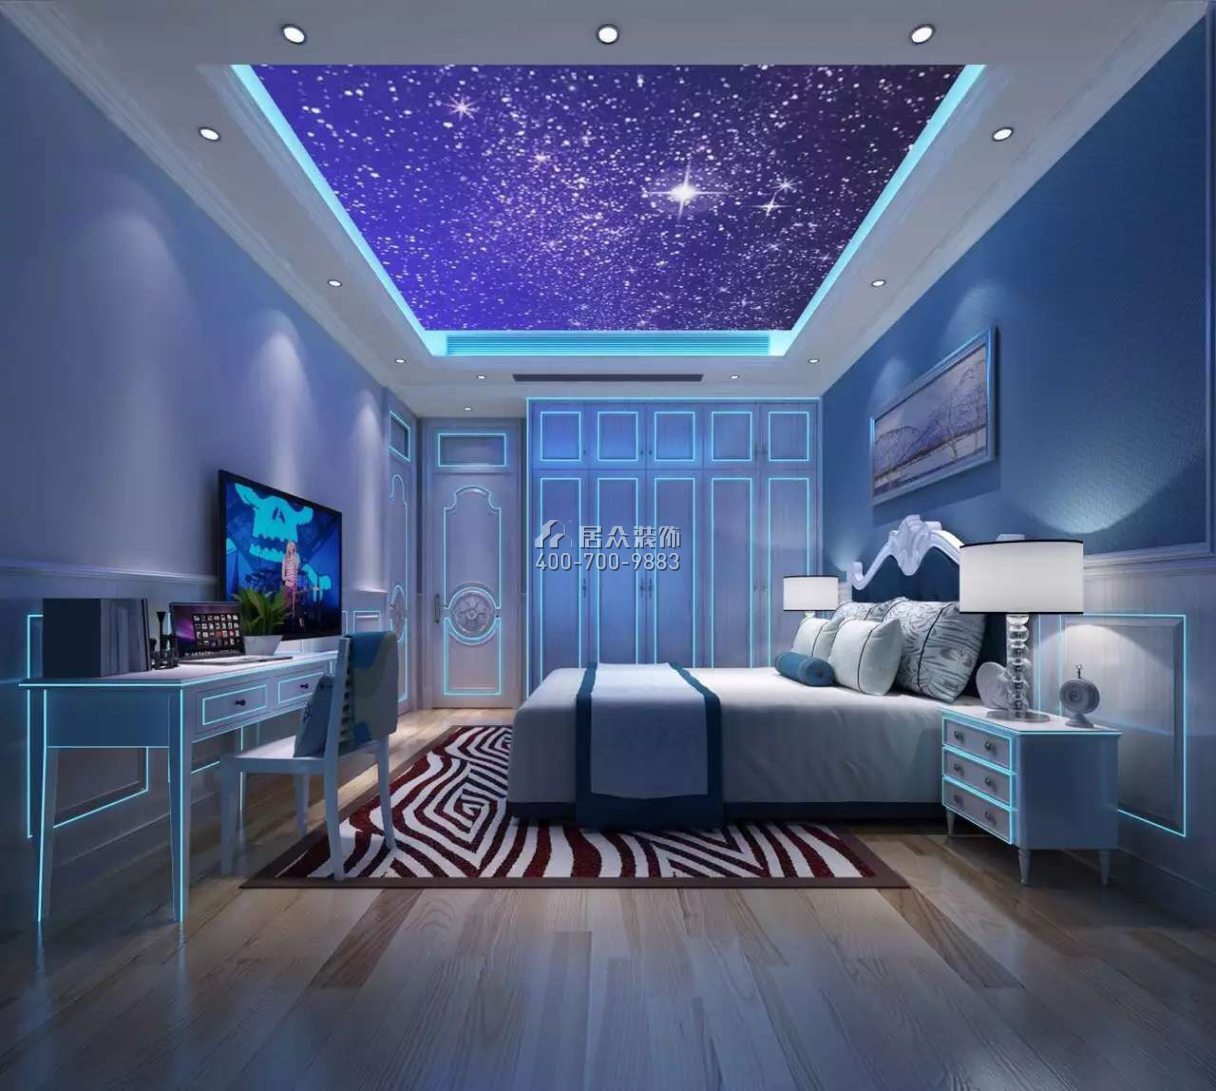 珑御府220平方米美式风格平层户型卧室kok电竞平台效果图